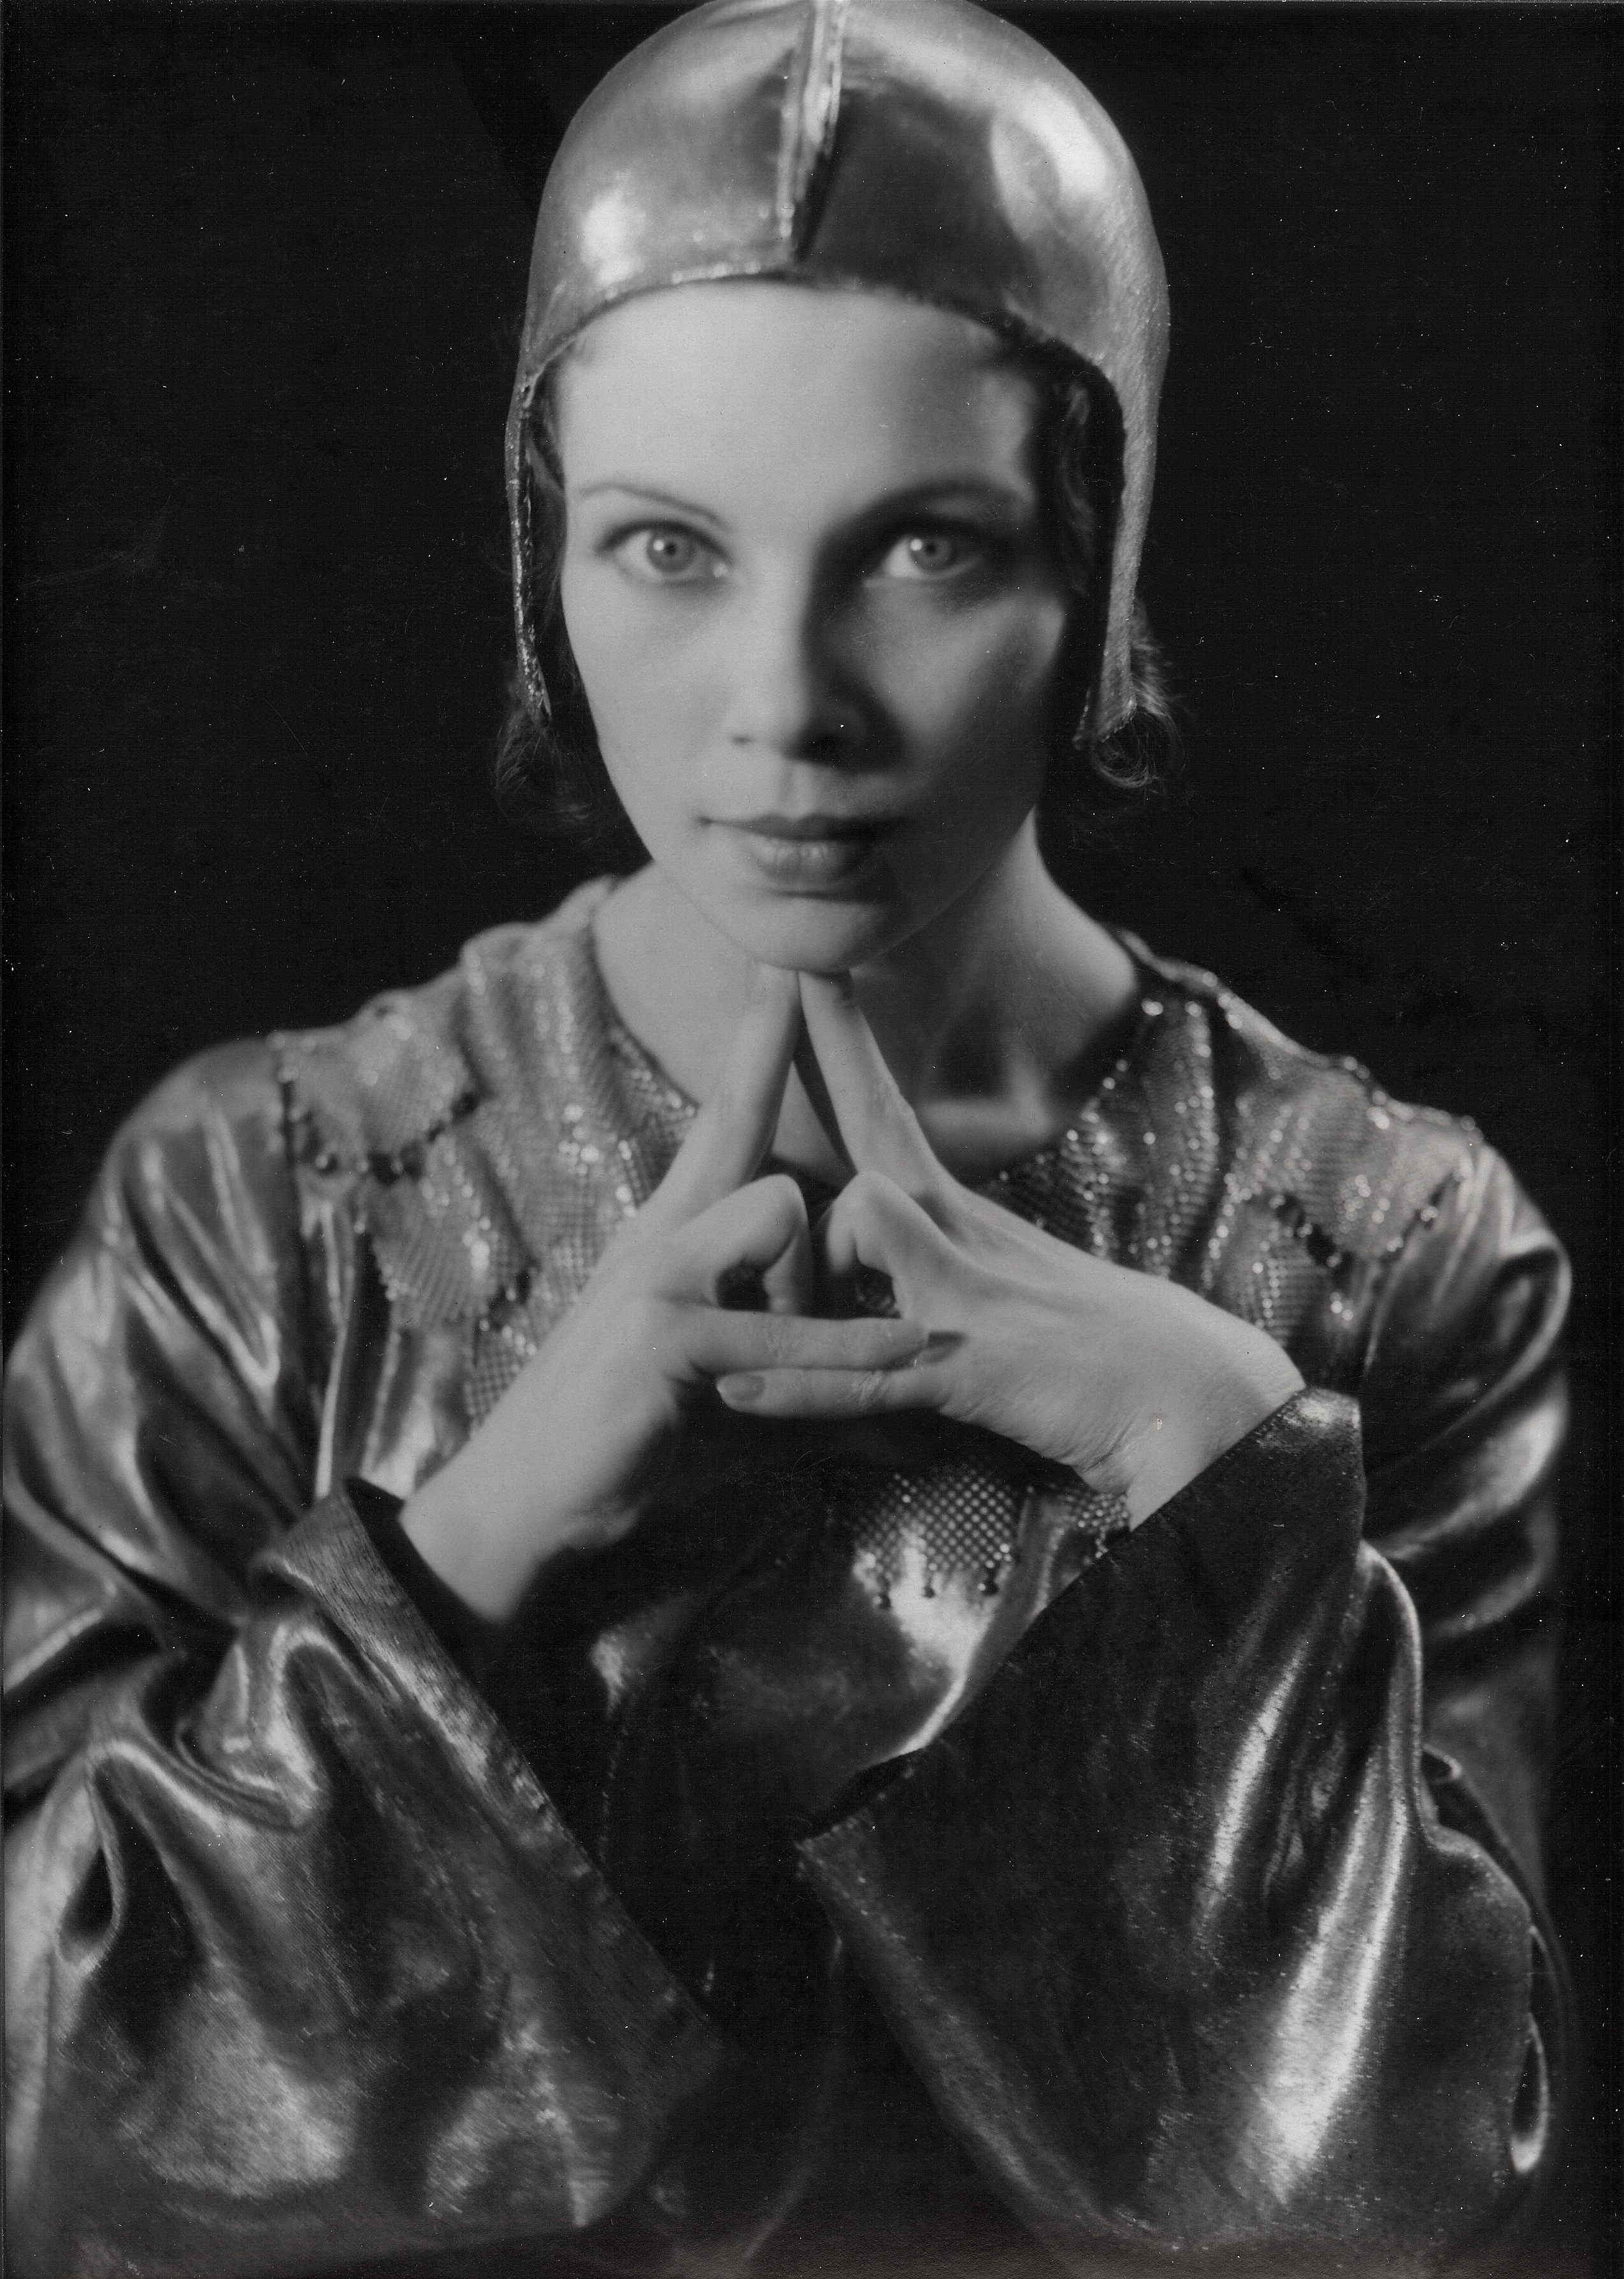 Ira Daniel Schwarz :: Tilly Losch (Ottilie Ethel Leopoldine Losch) in ‘The Band Wagon’, 1931-1932